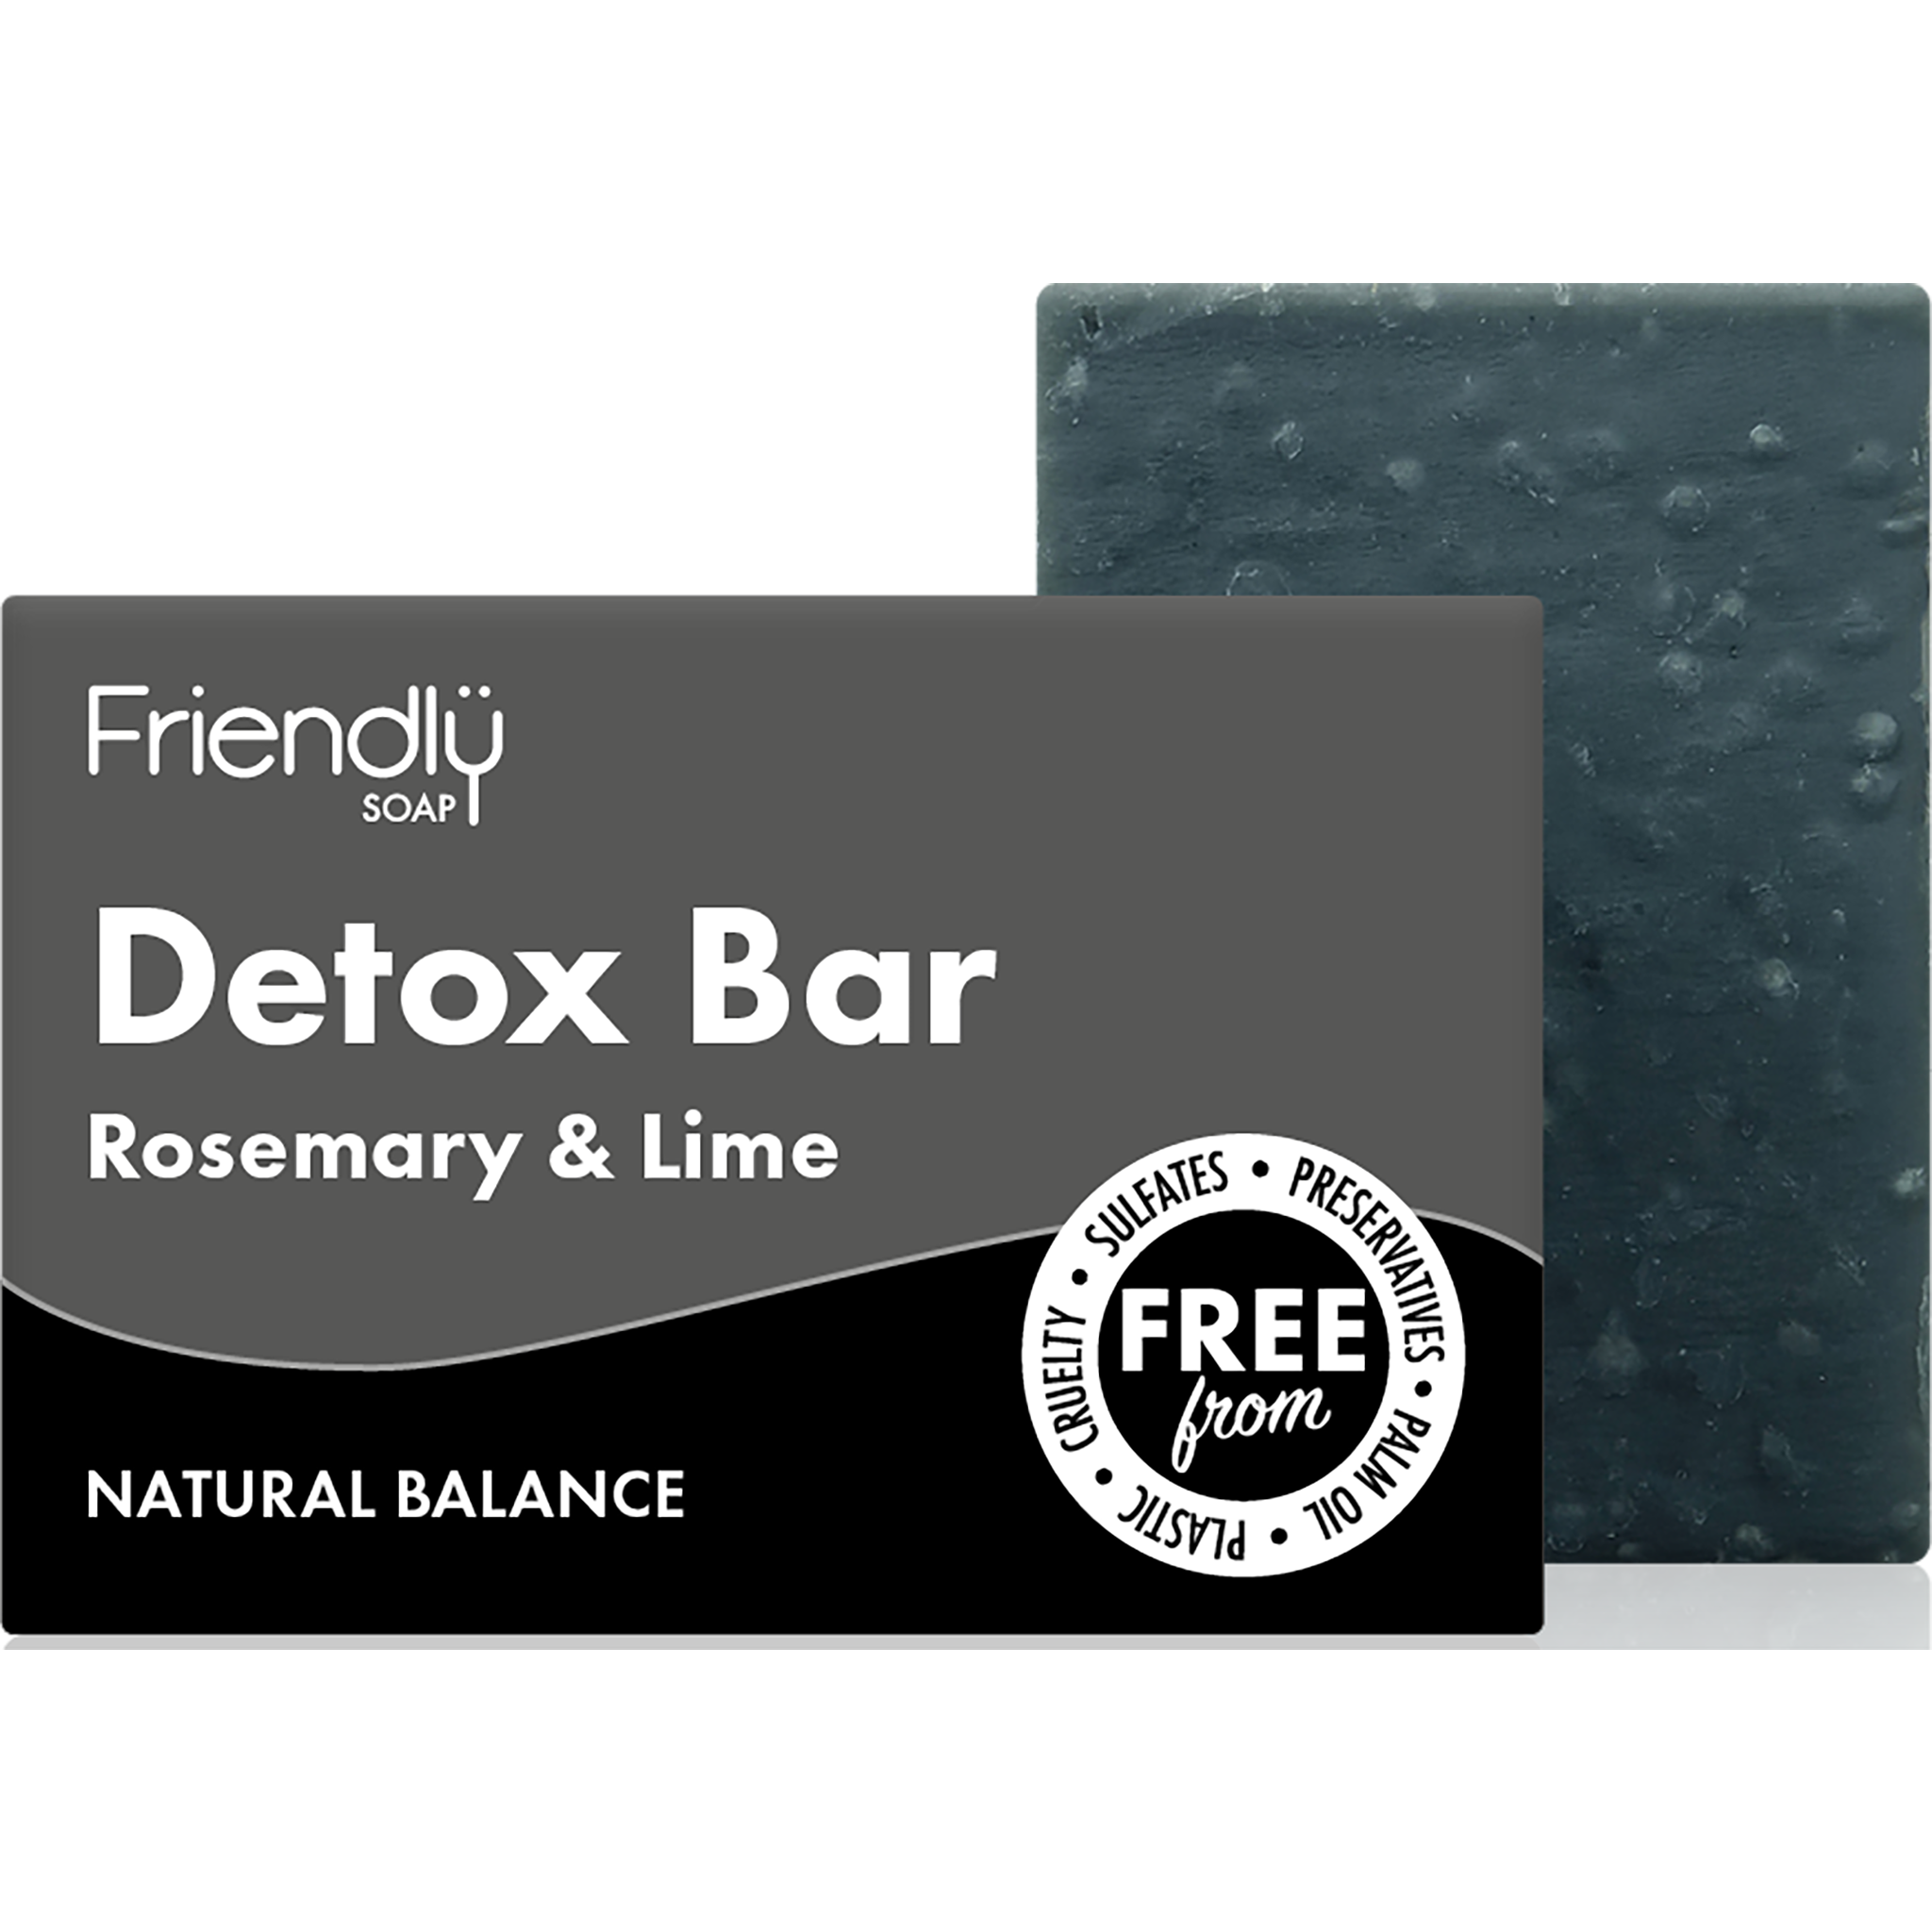 Rosemary & Lime Detox Bar